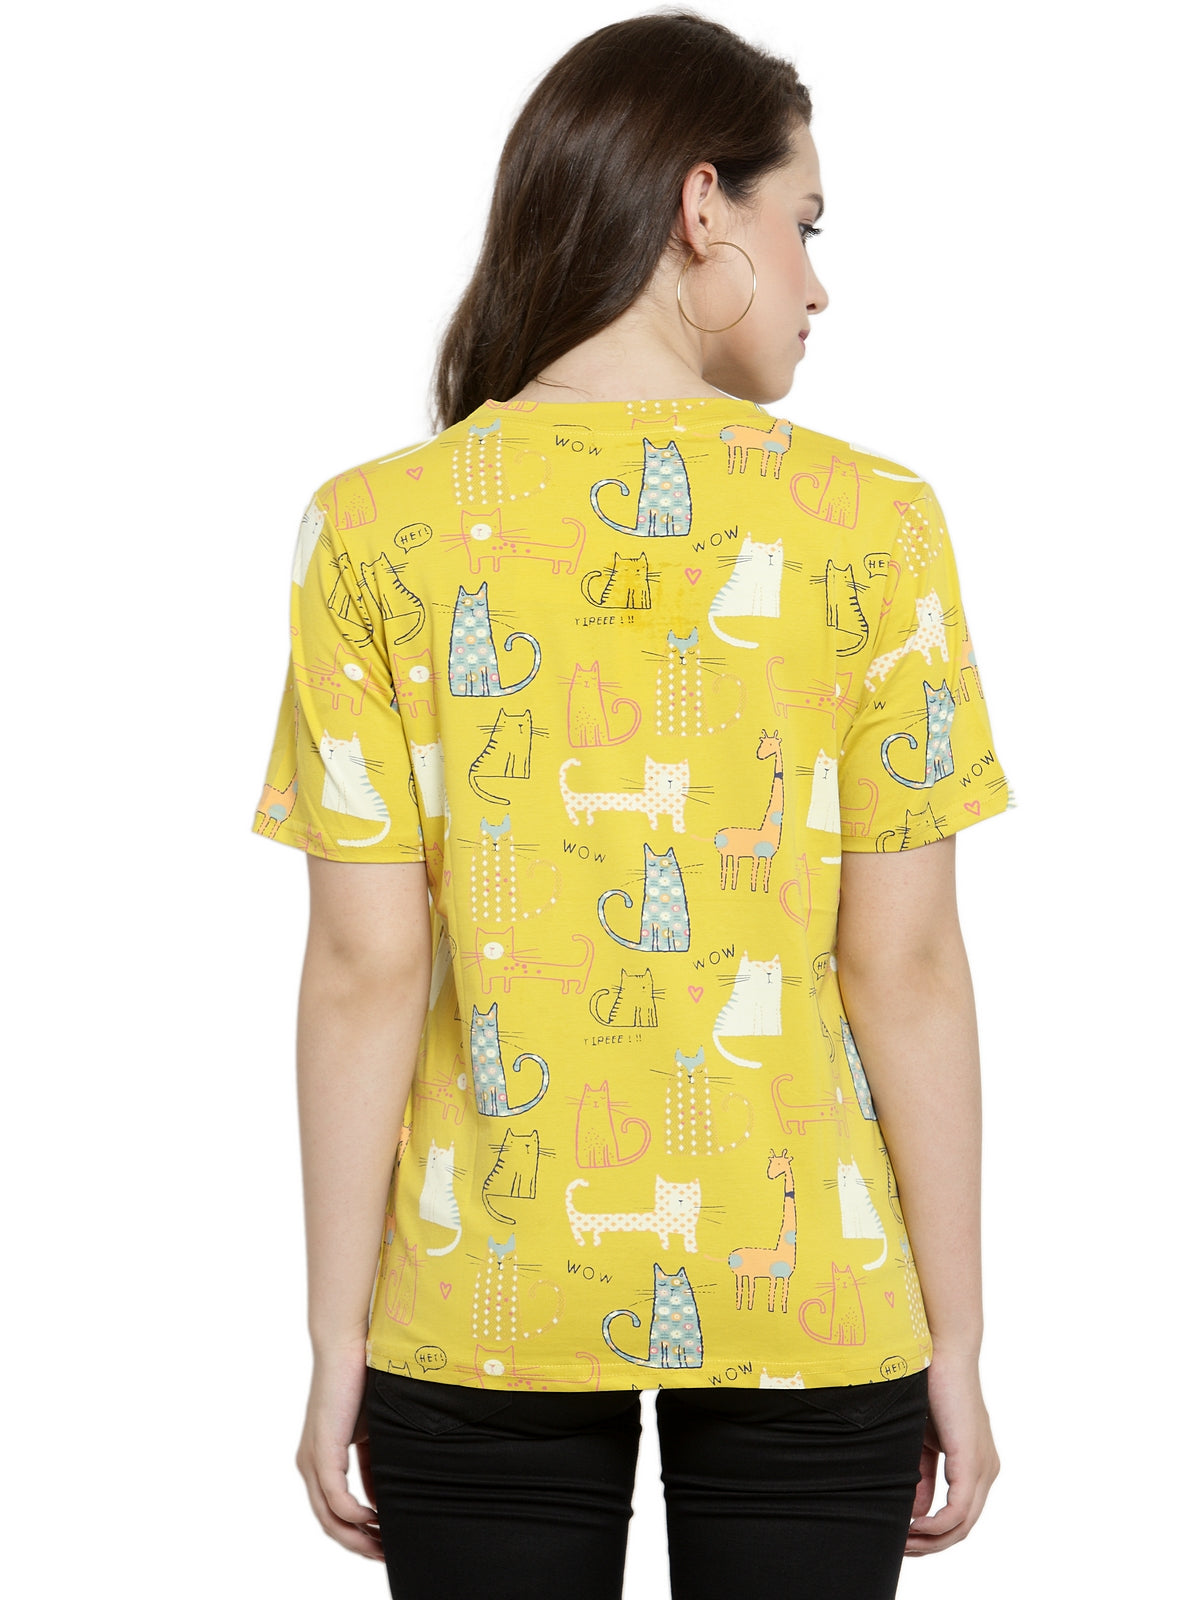 Women Regular Fit Printed Yellow Tops